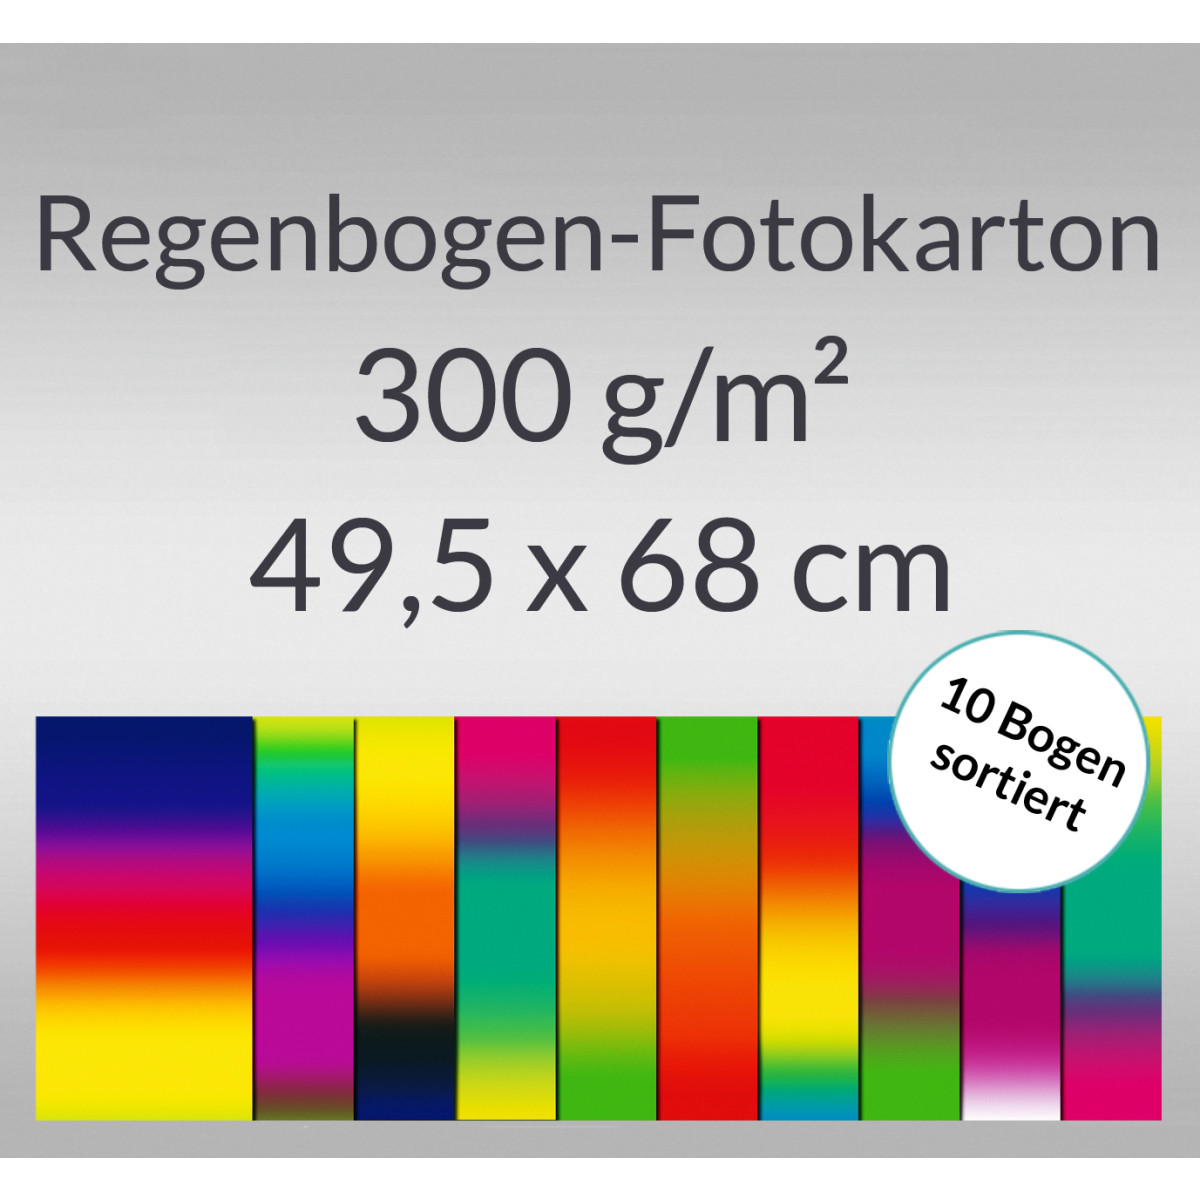 Regenbogen-Fotokarton 49,5 x 68 cm - 10 Bogen sortiert